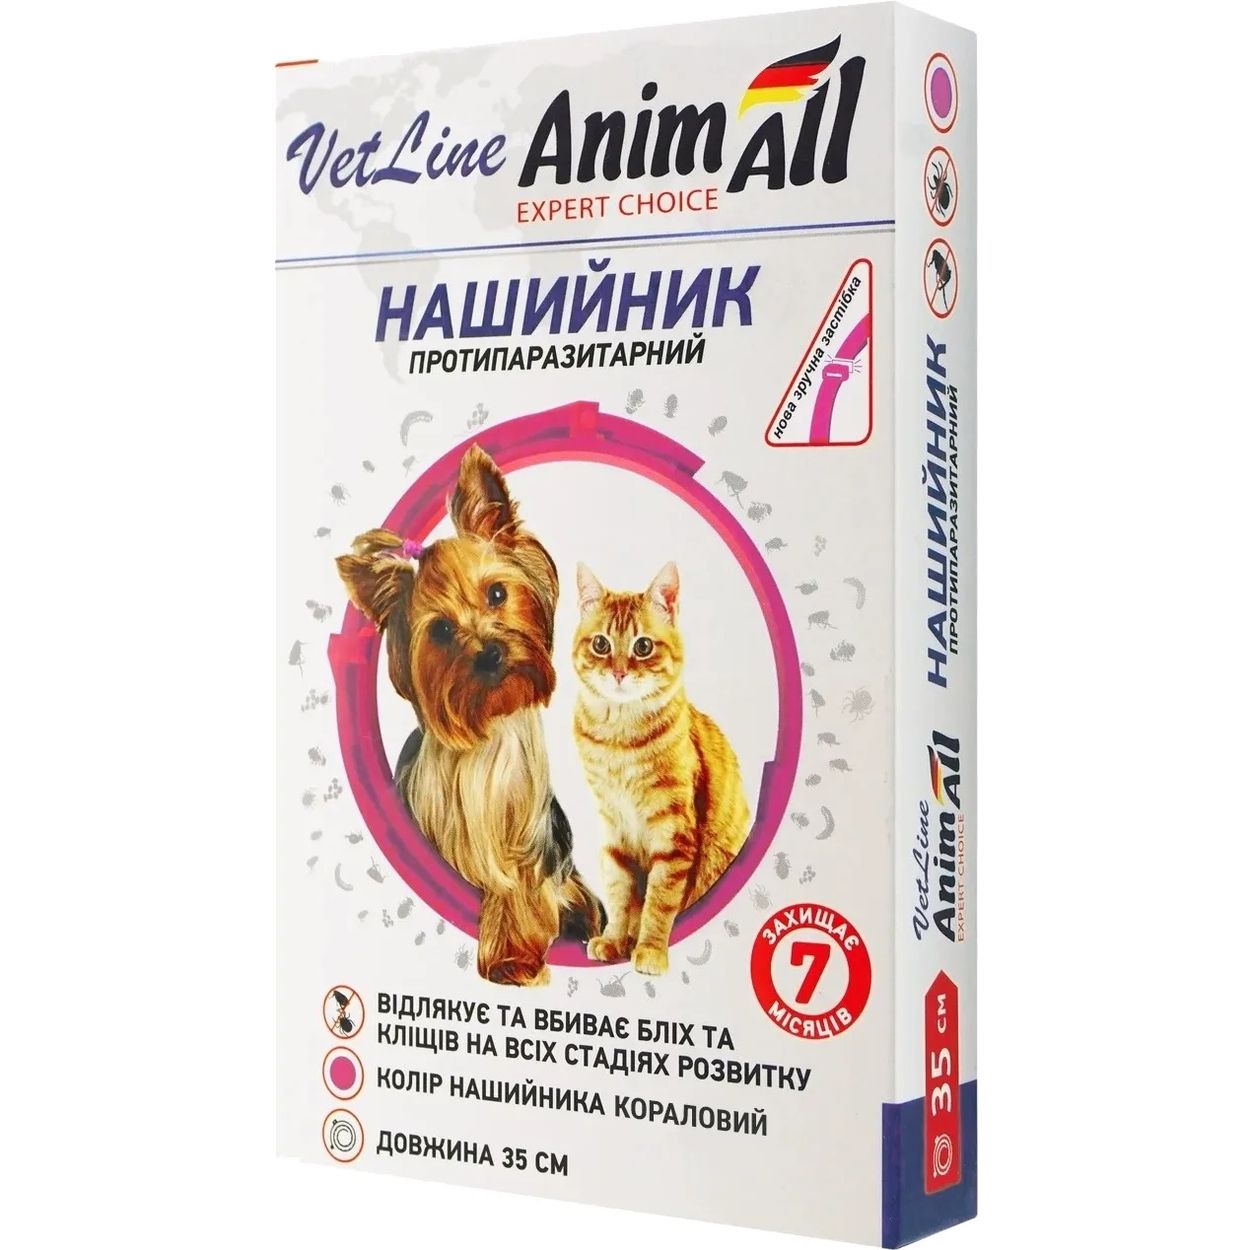 Ошейник противопаразитарный AnimAll VetLine для кошек и собак коралловый 35 см - фото 1